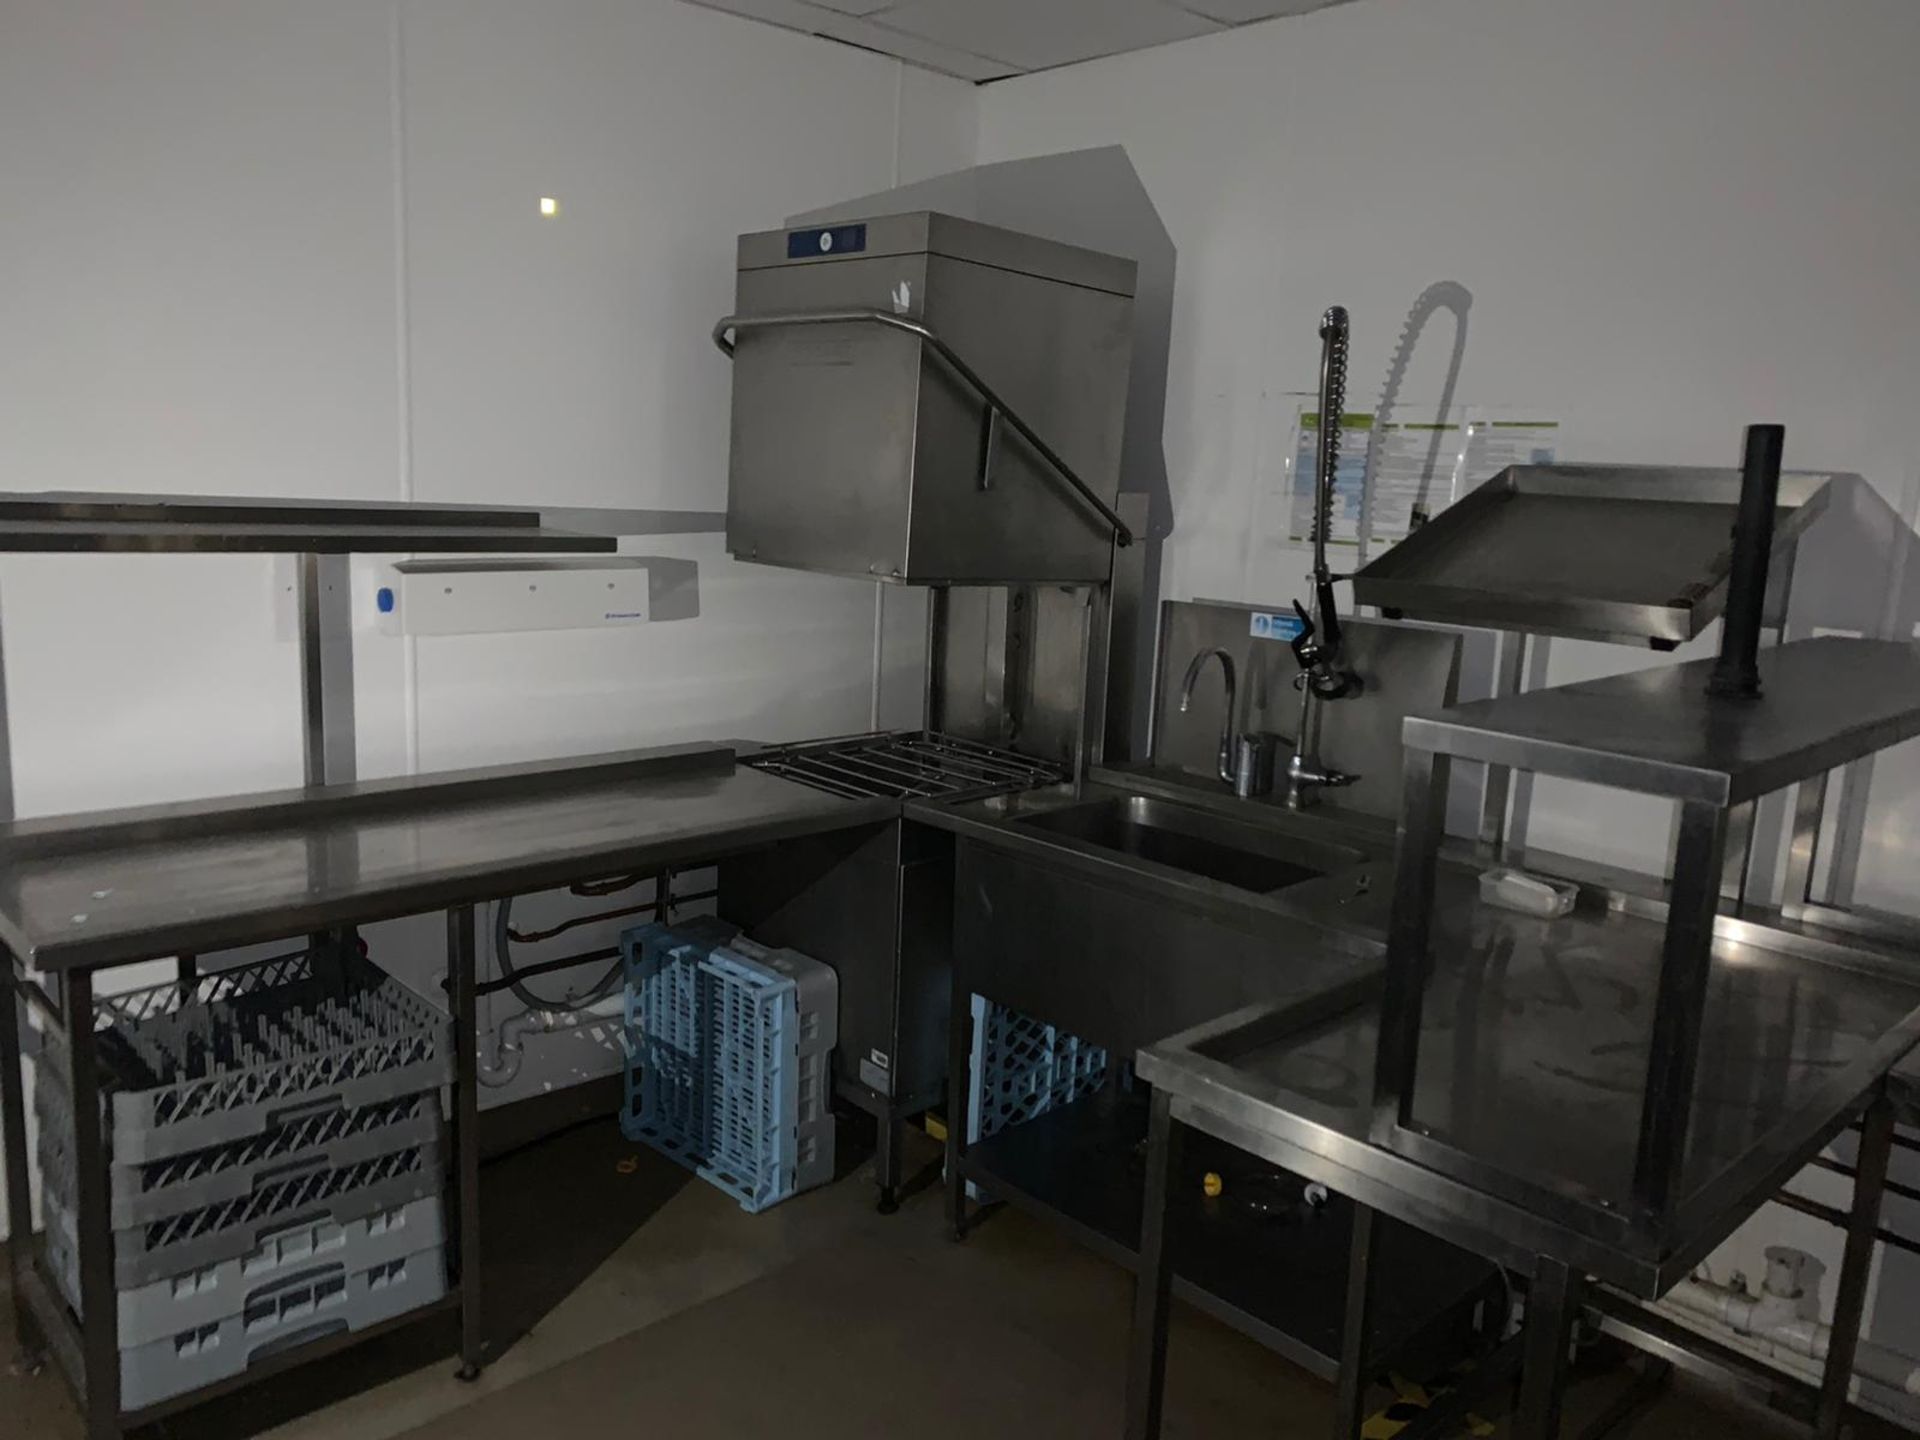 Hobart Commercial Grade Conveyor Dishwasher & Sink Unit - Image 4 of 9